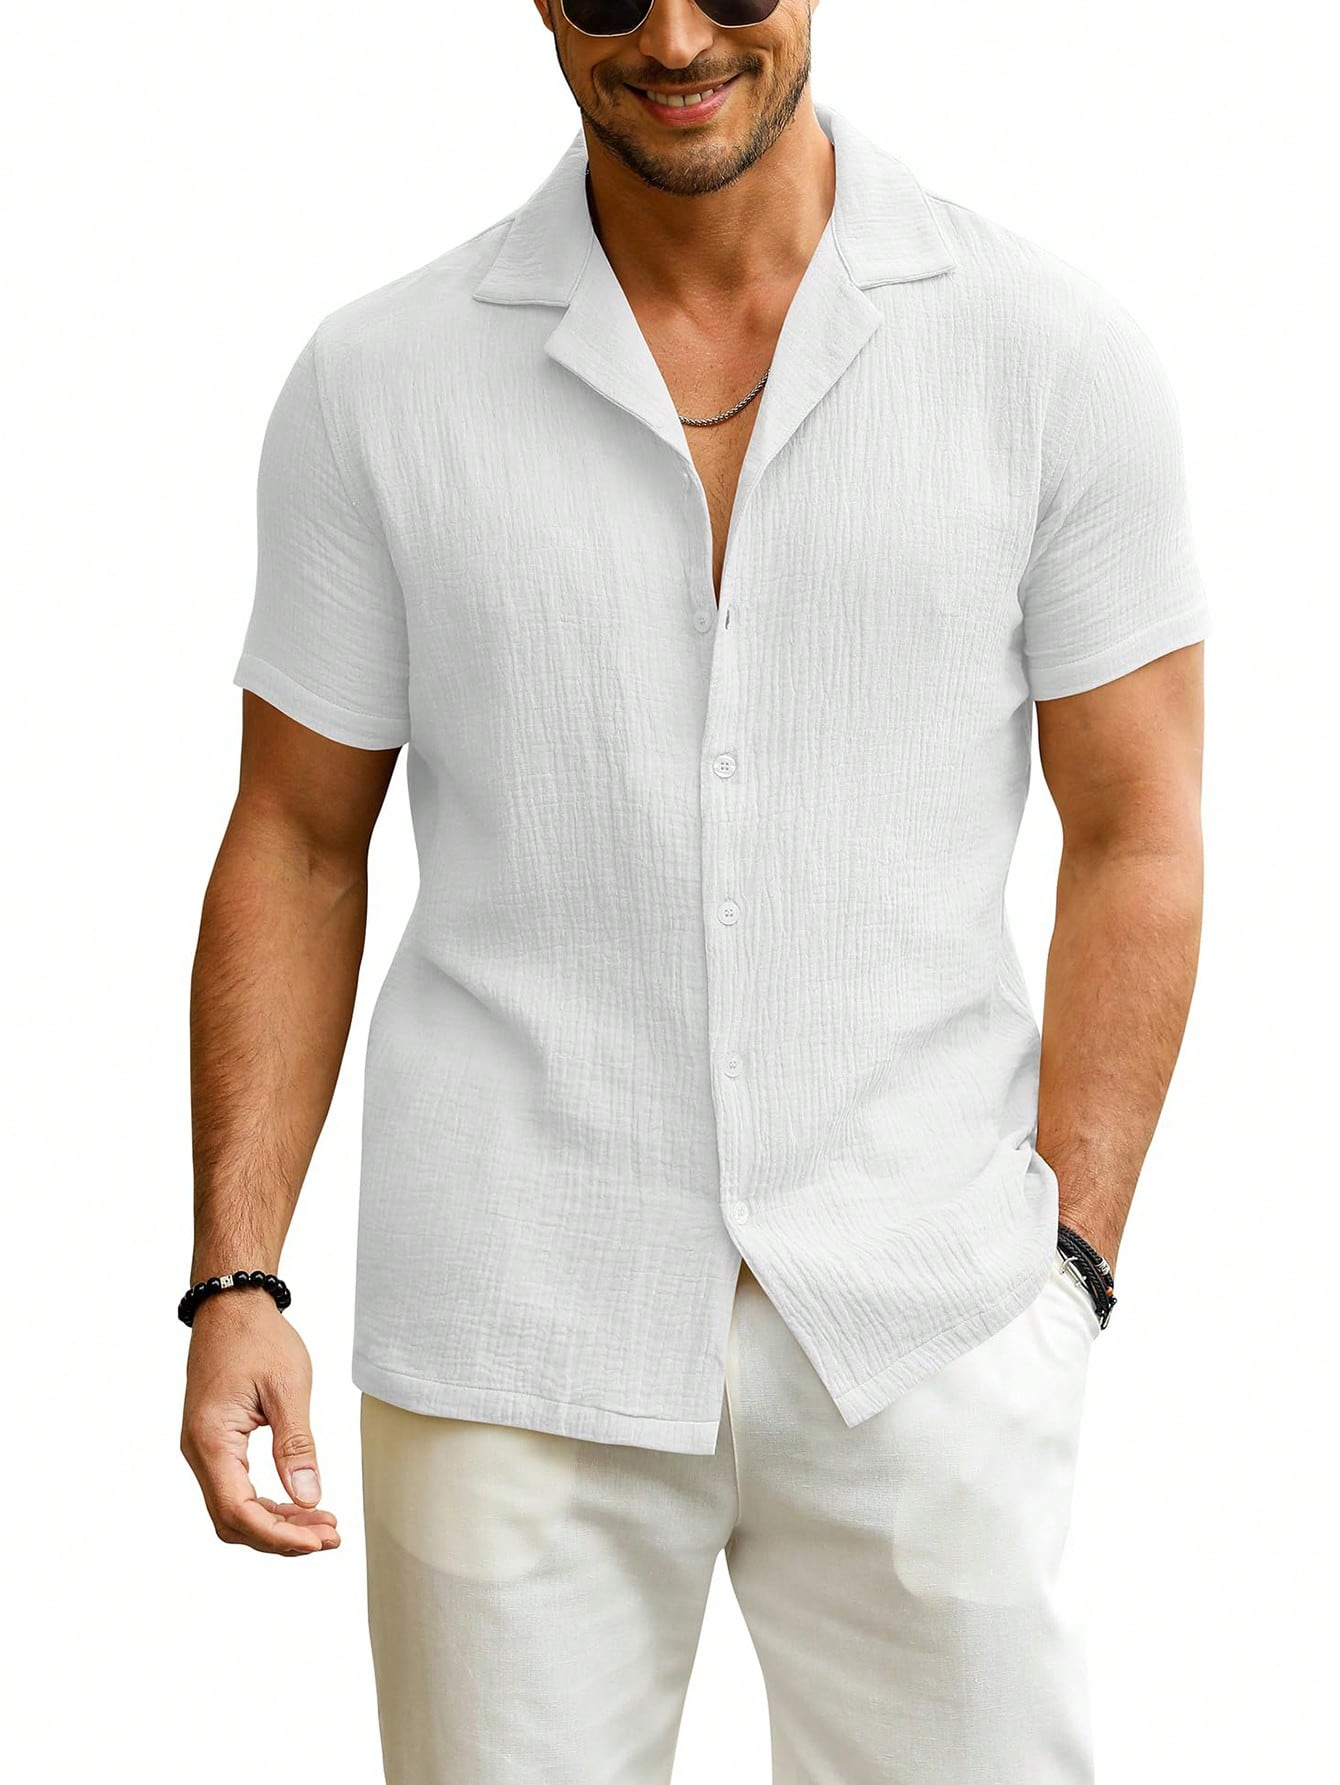 Мужская рубашка с коротким рукавом на пуговицах и воротником для летнего пляжа, белый